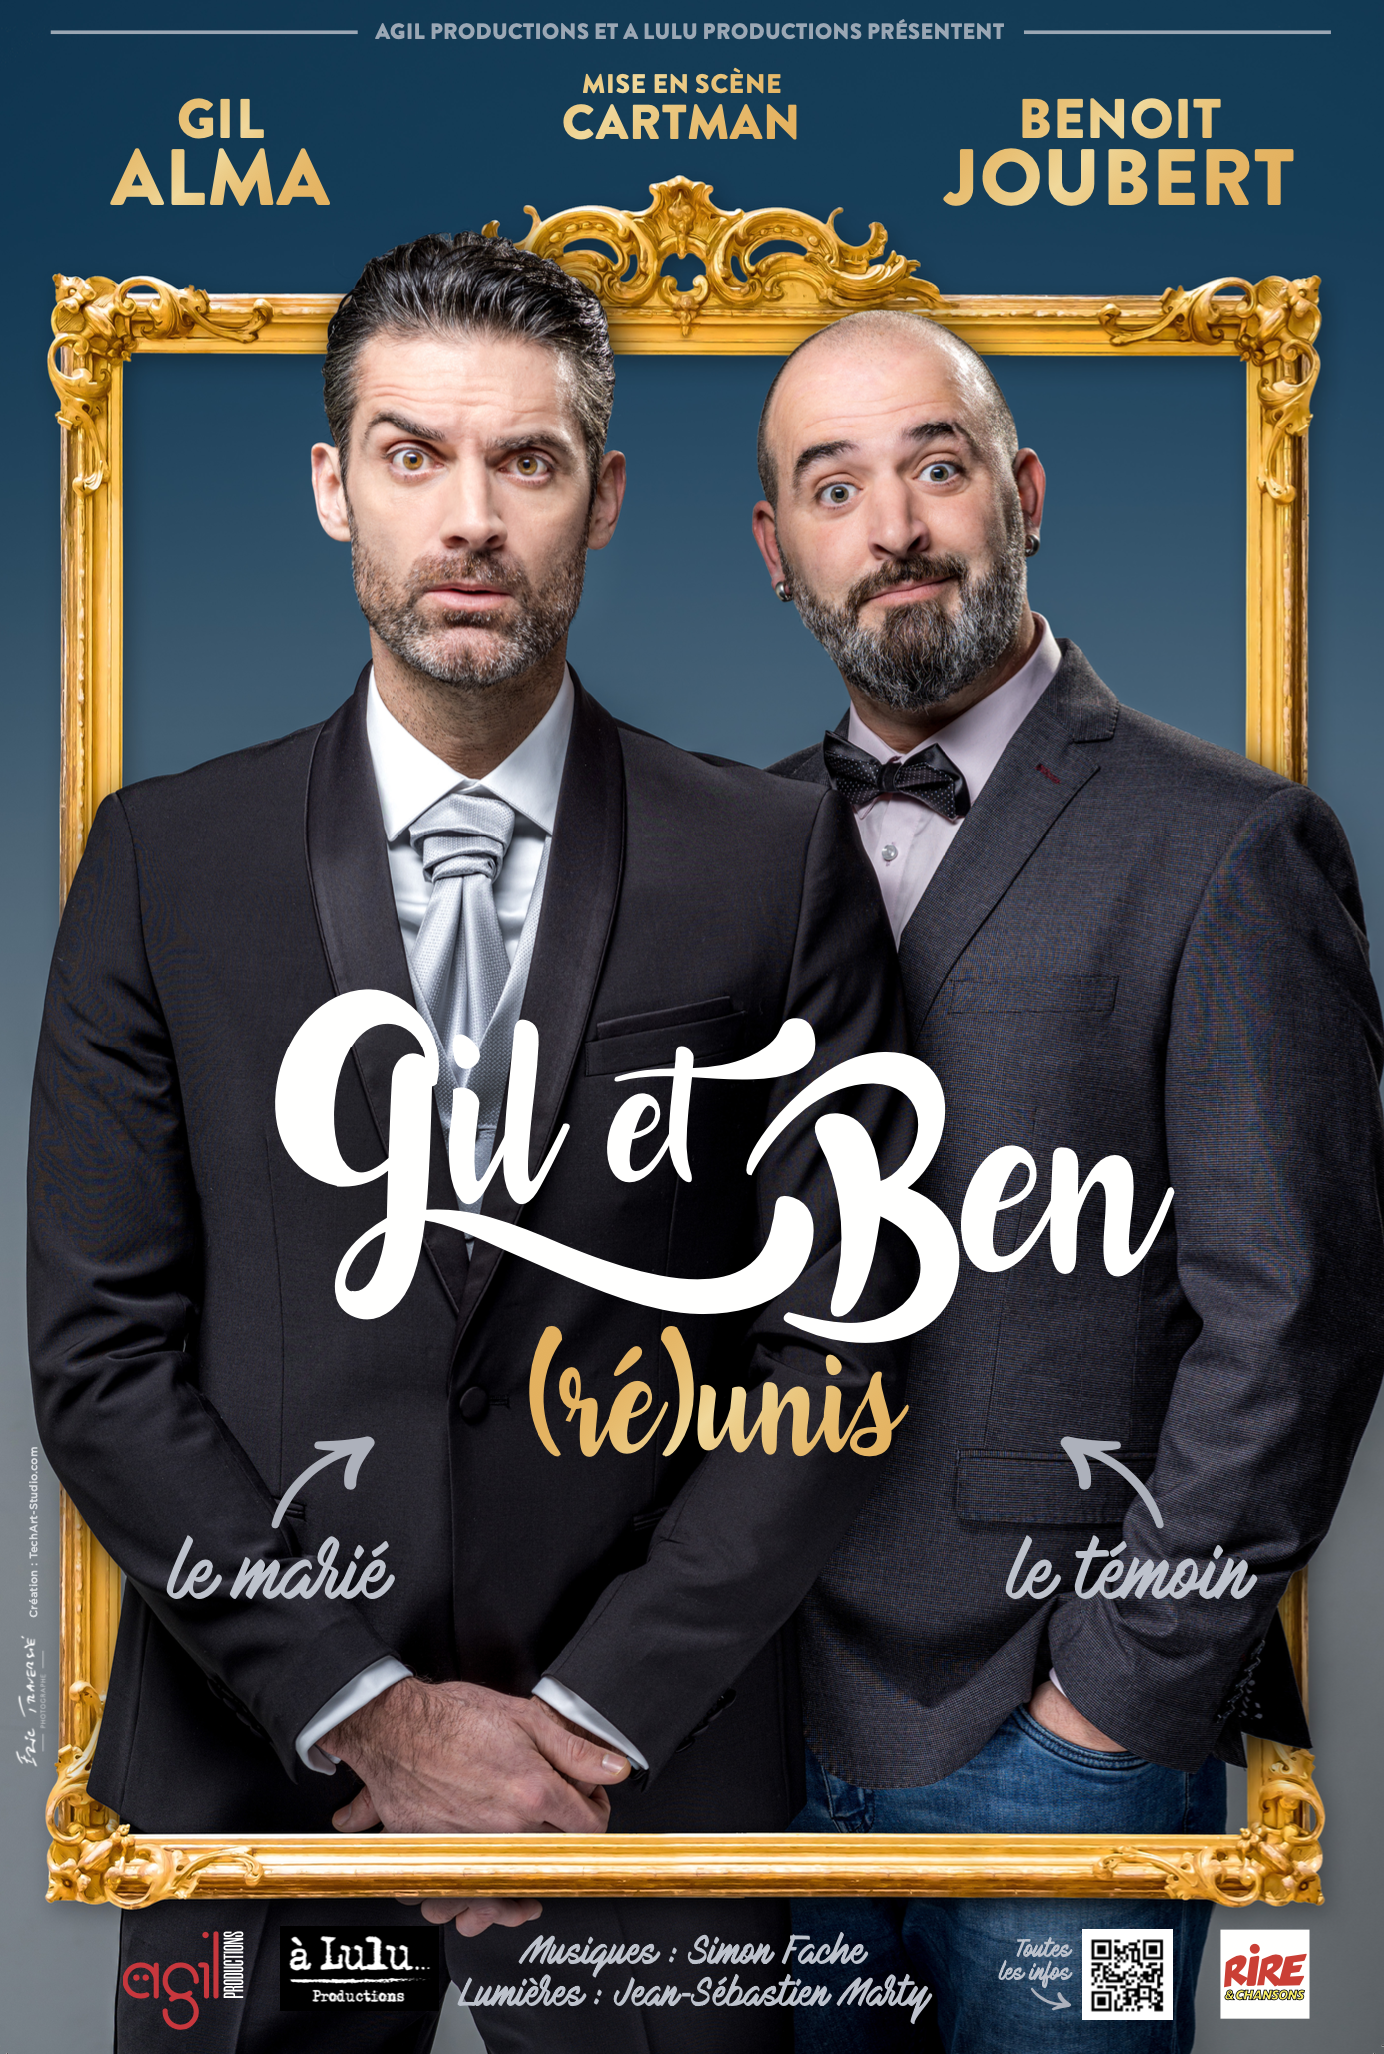 GIL ET BEN REUNIS (Le Duo d'Humour)